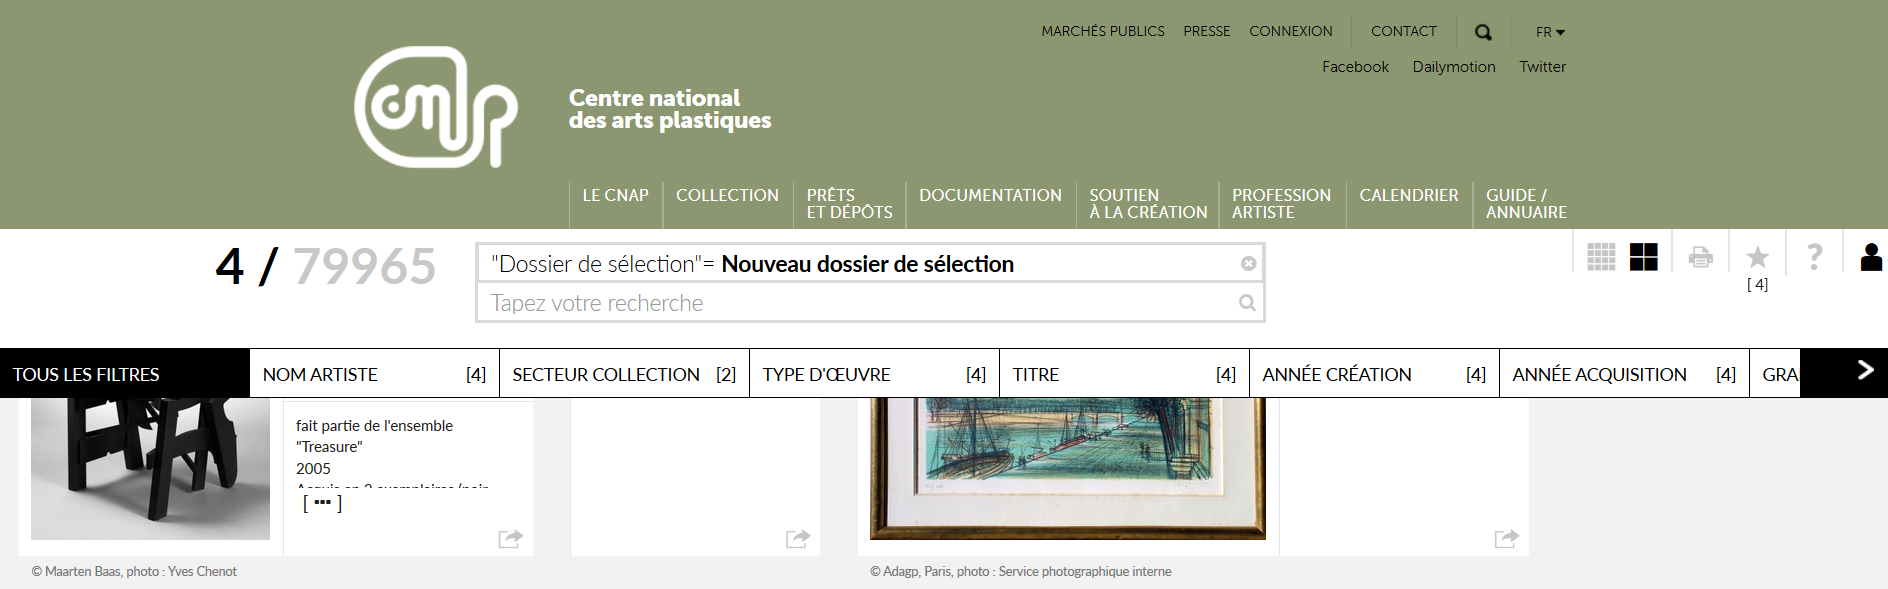 FireShot Screen Capture #776 - 'Collection en ligne I Centre national des arts plastiques' - www_cnap_fr_collection-en-ligne_#_artworks_layout=grid&page=0&favorites=true